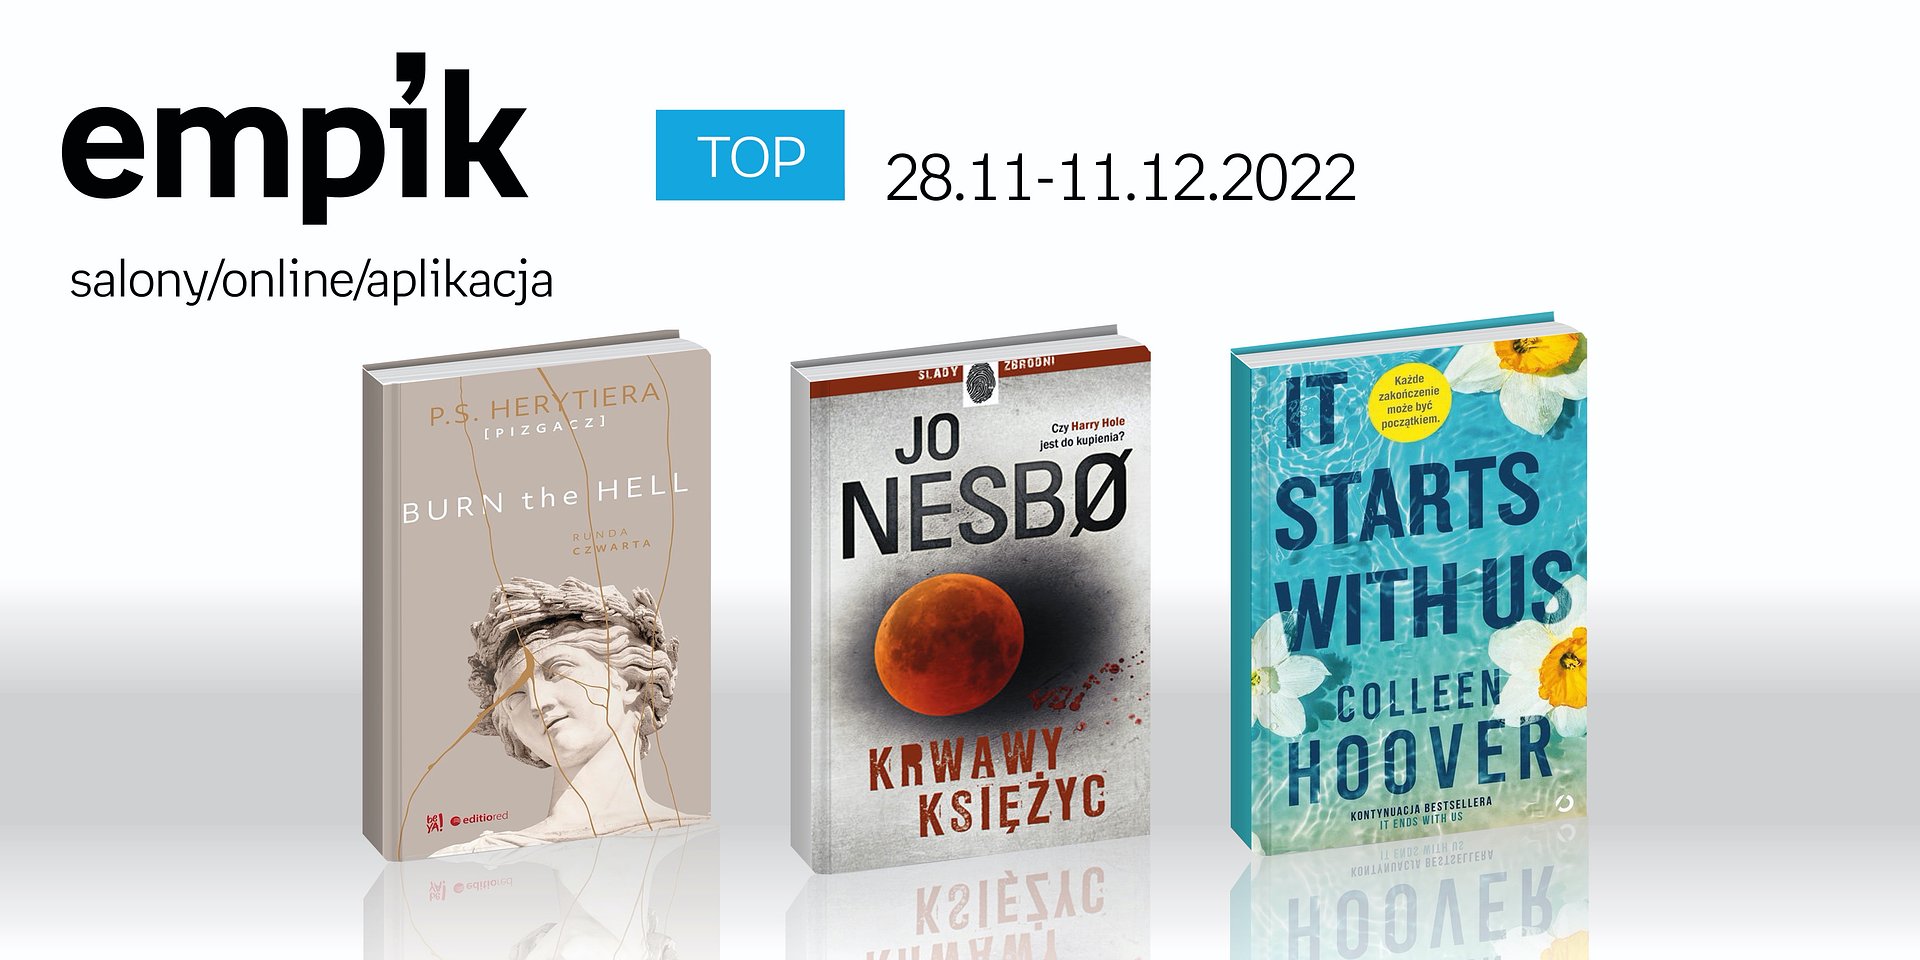 Książkowe listy bestsellerów w Empiku za okres od 28 listopada do 11 grudnia 2022 r